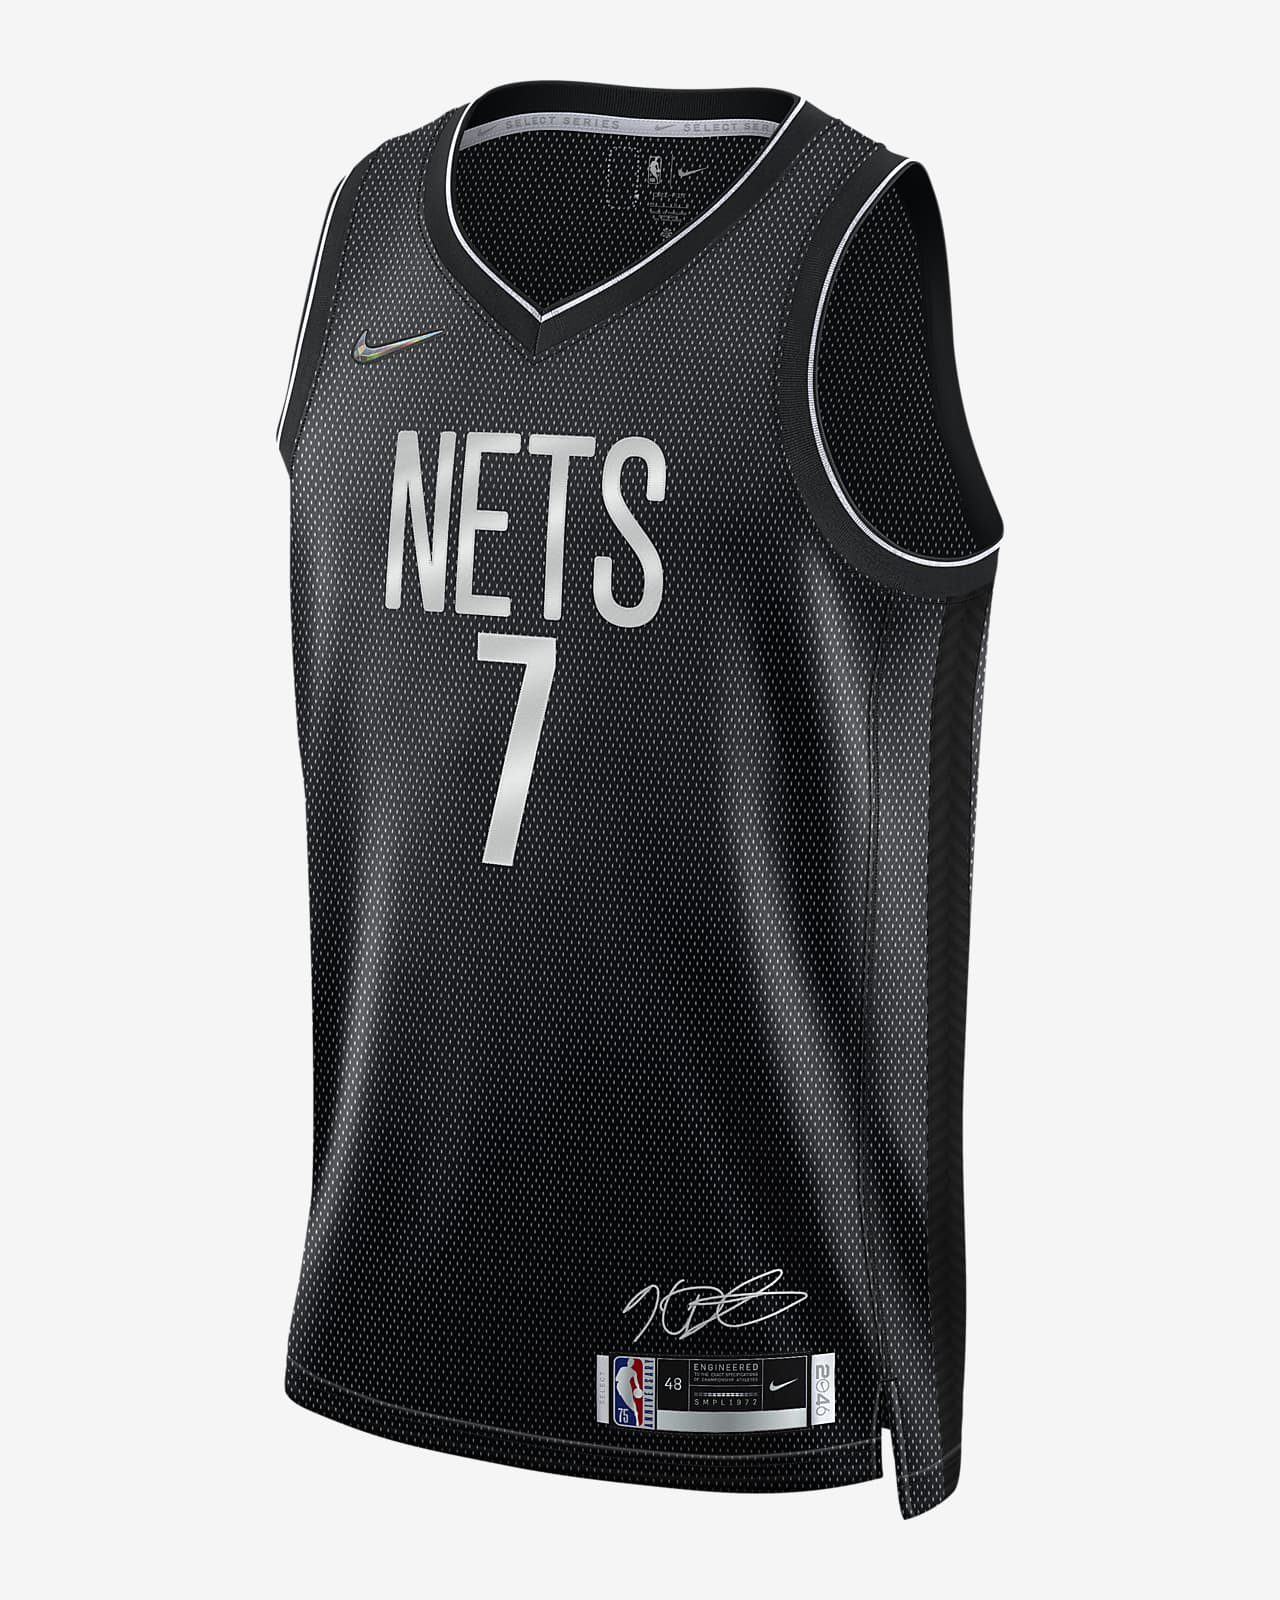 Ανδρική φανέλα Nike Dri-FIT NBA Kevin Durant Μπρούκλιν Νετς